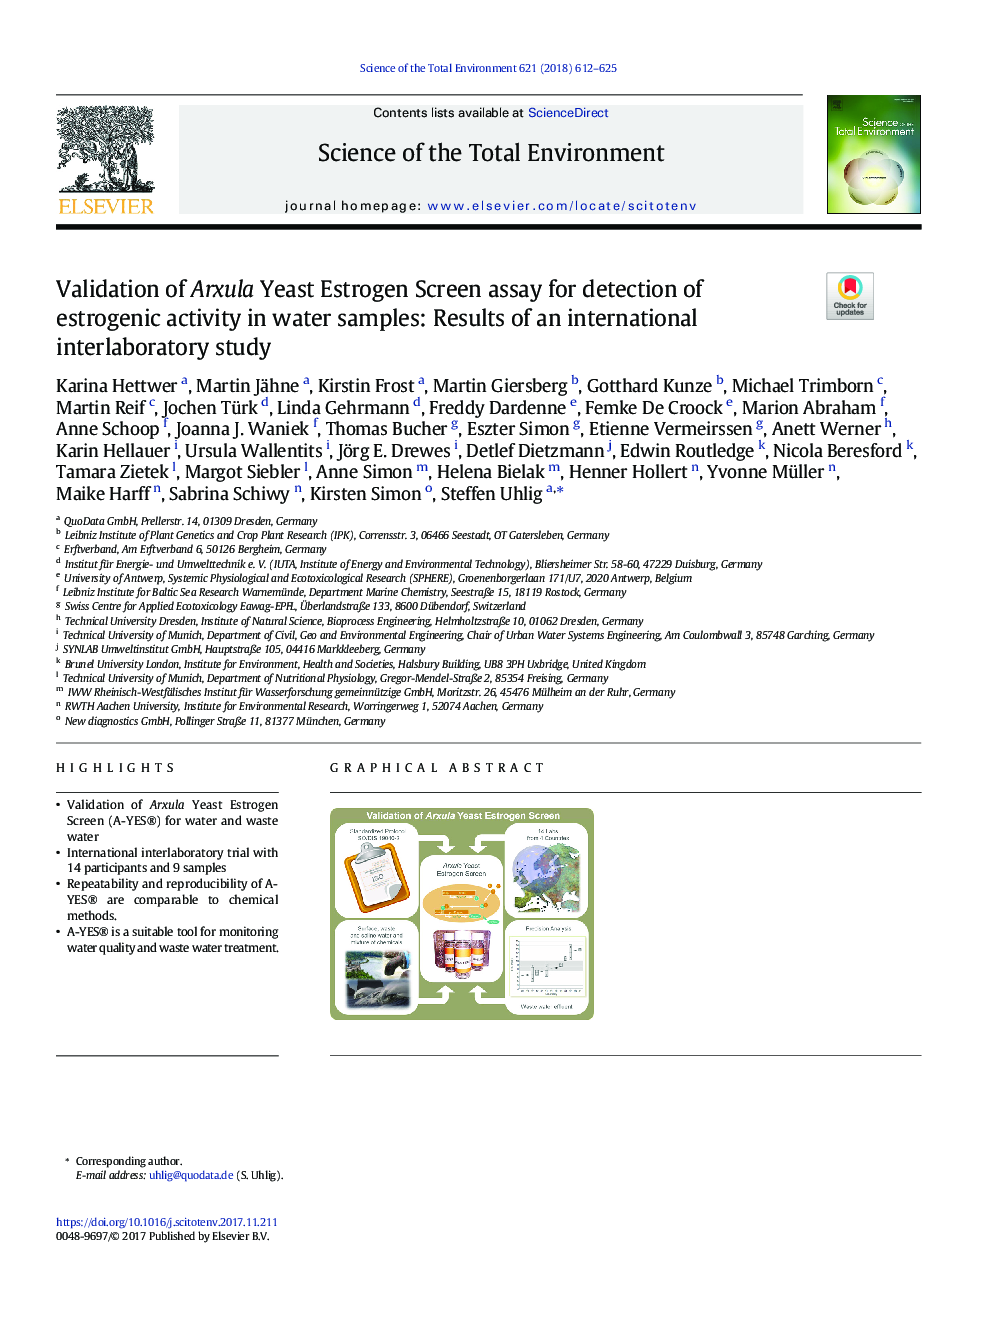 اعتبار سنجی صفحه نمایش استروئید بید آرگوسولا برای تشخیص فعالیت استروژنیک در نمونه های آب: نتایج یک مطالعه بین آزمایشگاهی بین المللی 